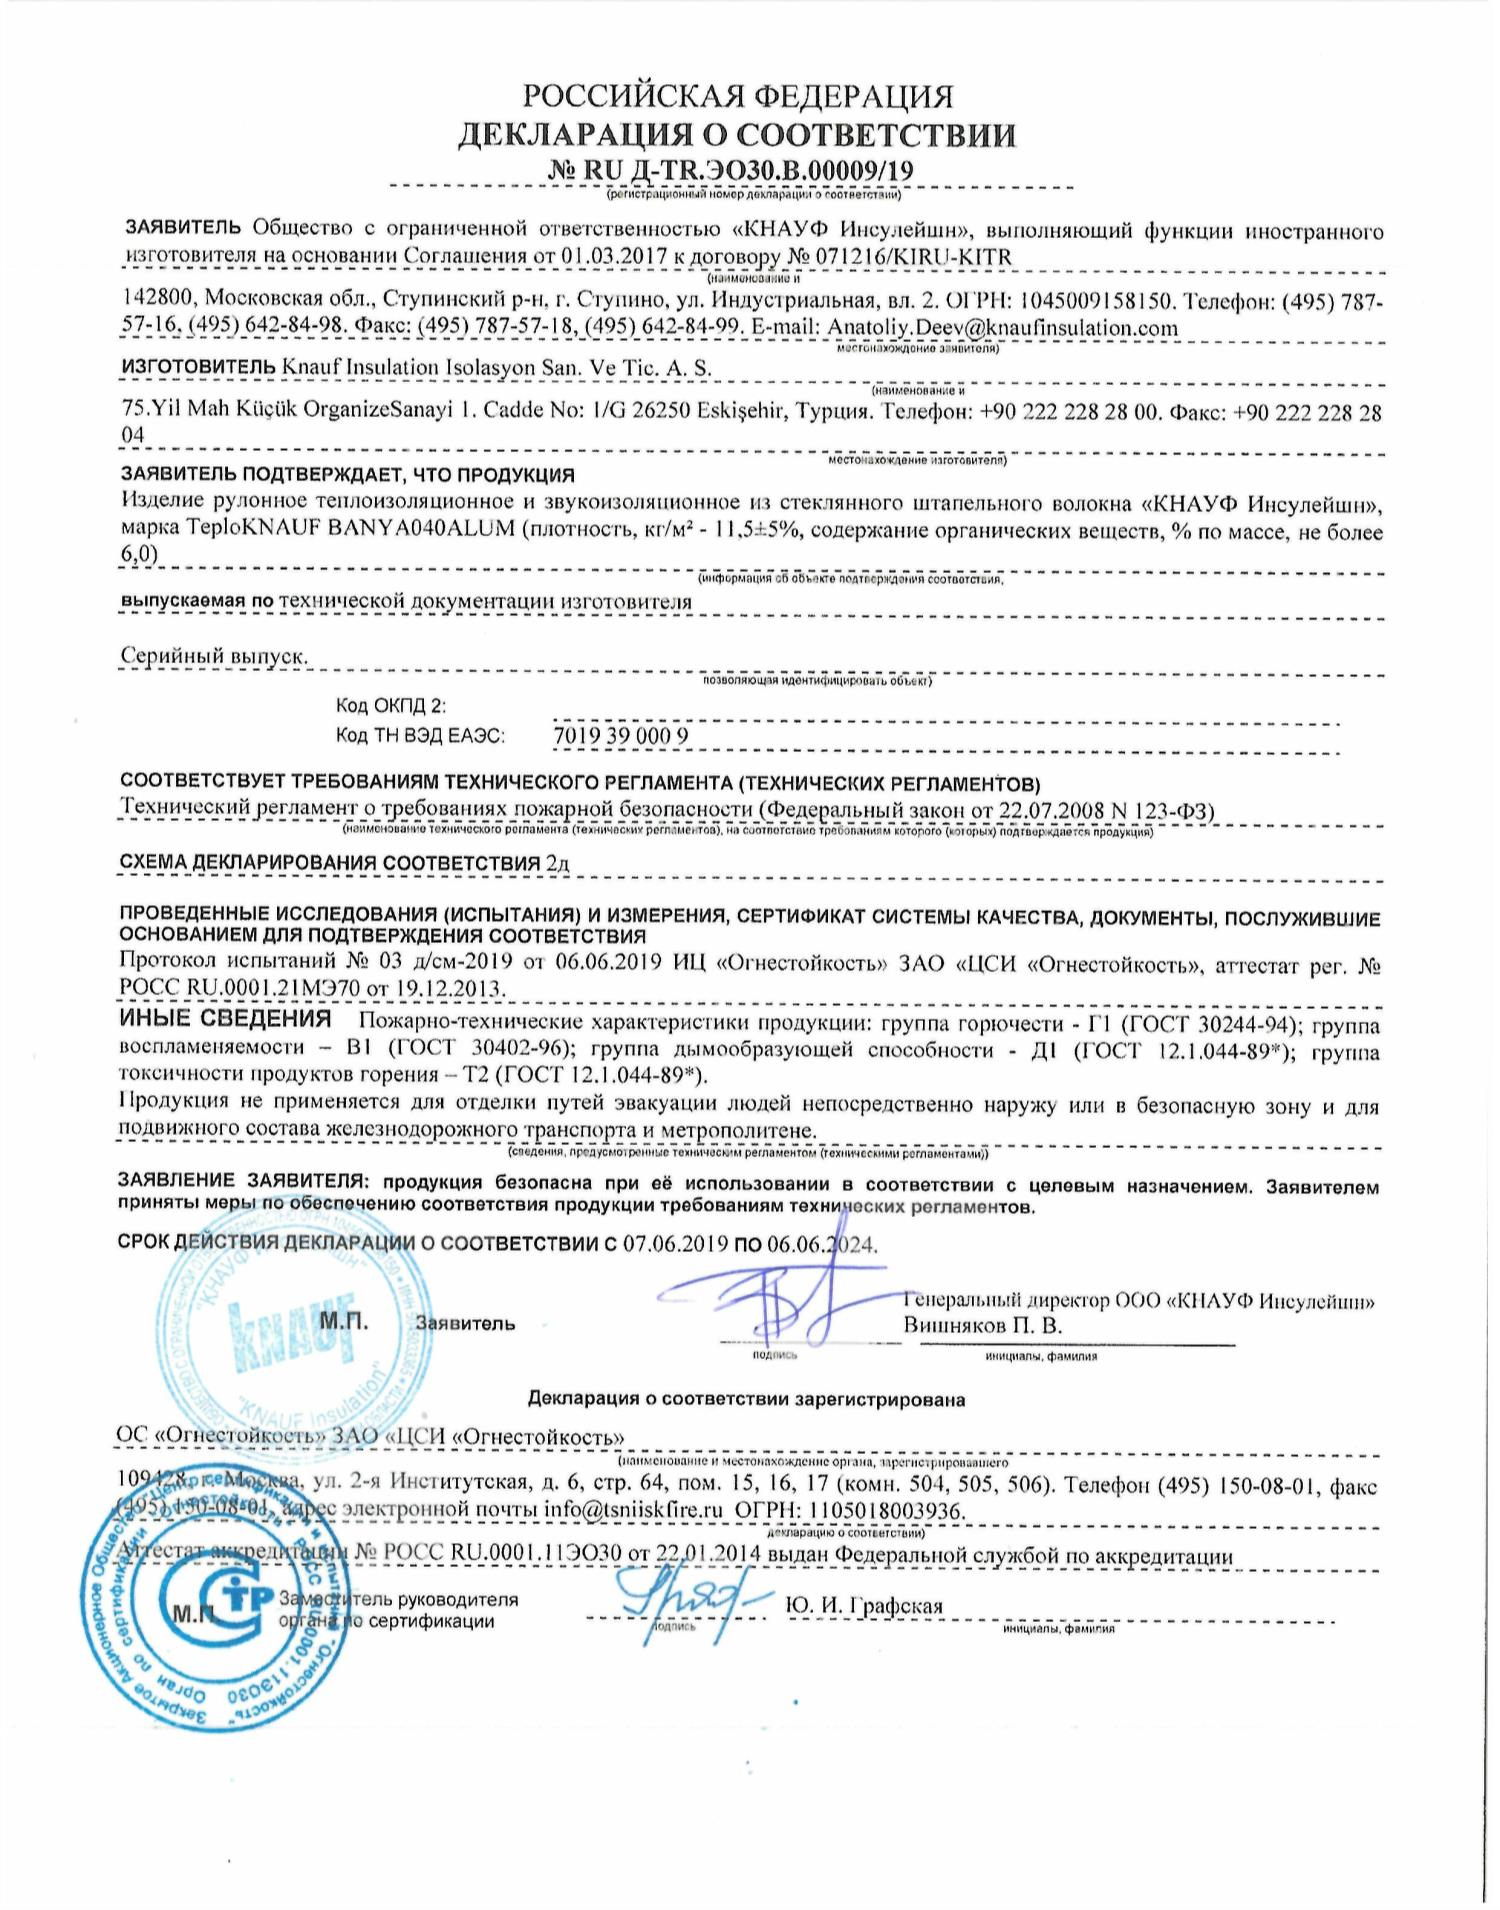 ТеплоКНАУФ Баня: Сертификат пожарной безопасности